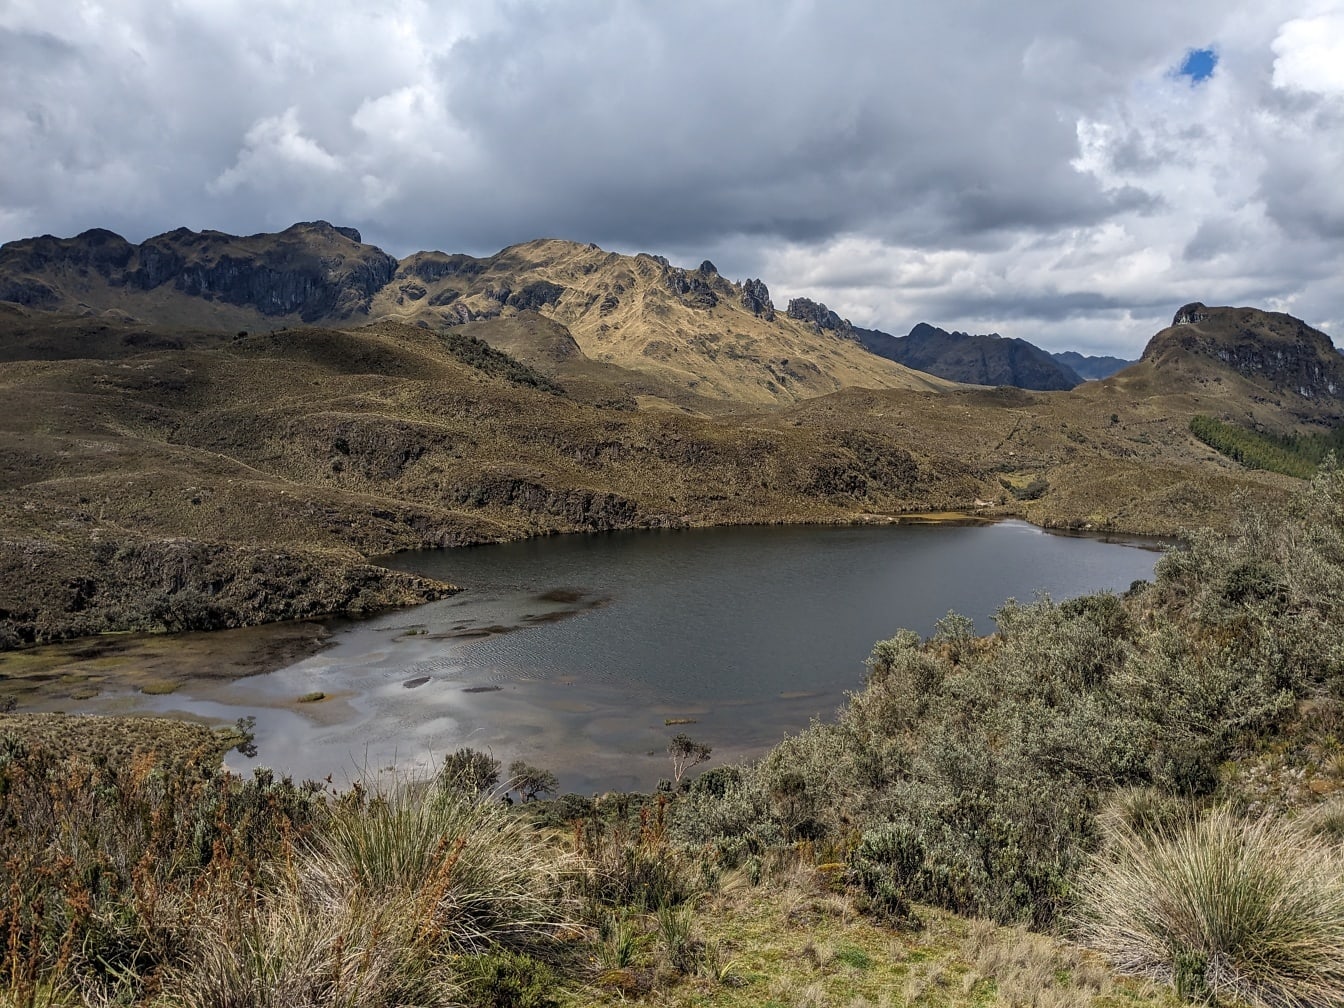 Parque nacional de Cajas cercado por montanhas nas terras altas do Equador